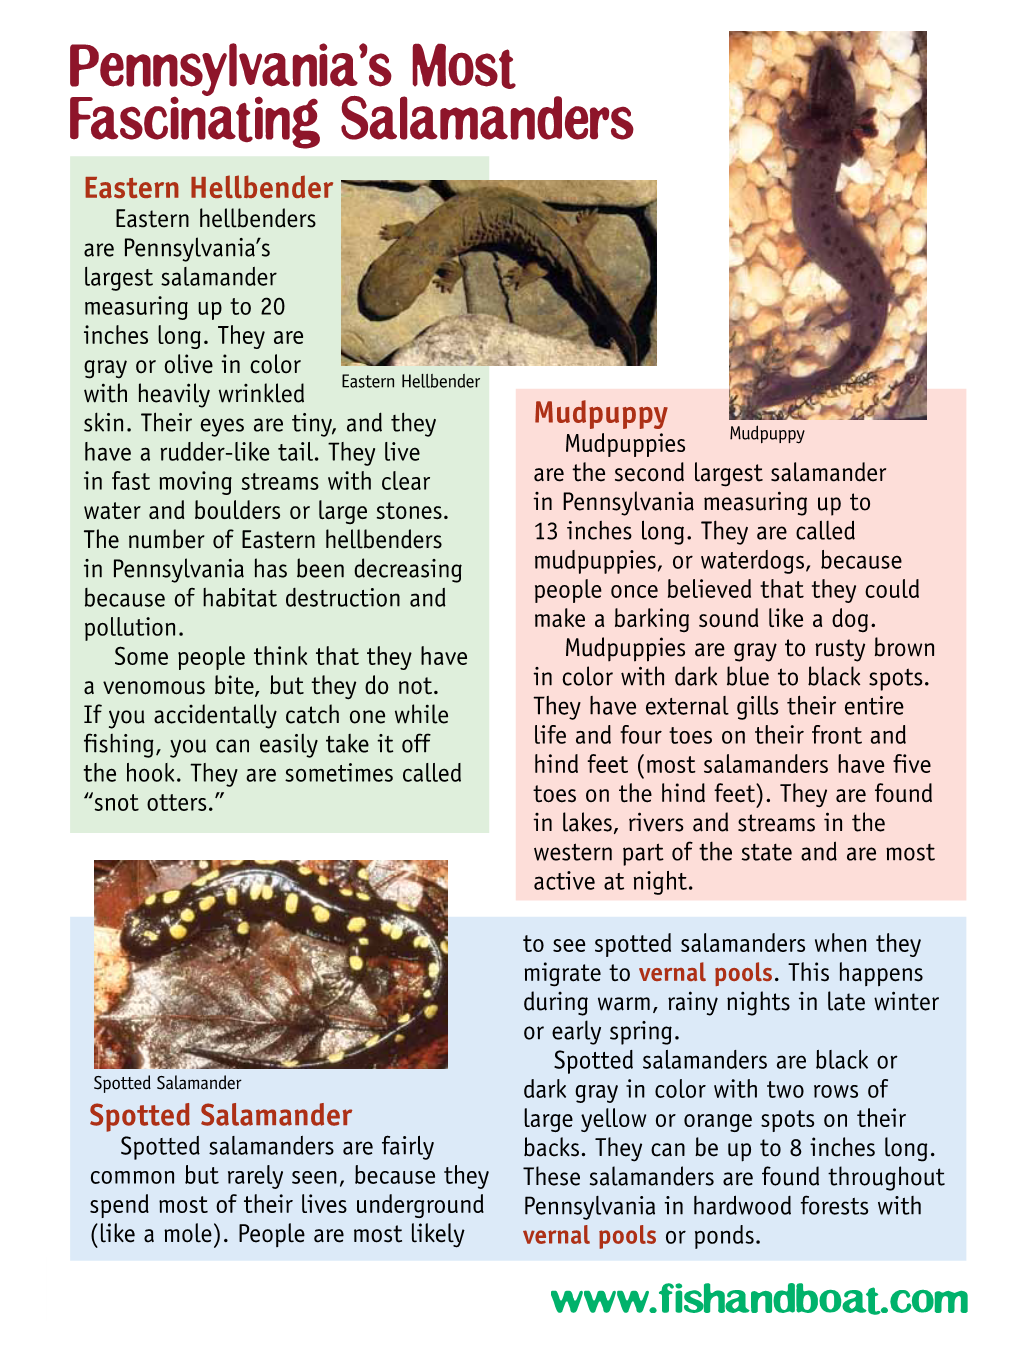 Pennsylvania's Most Fascinating Salamanders